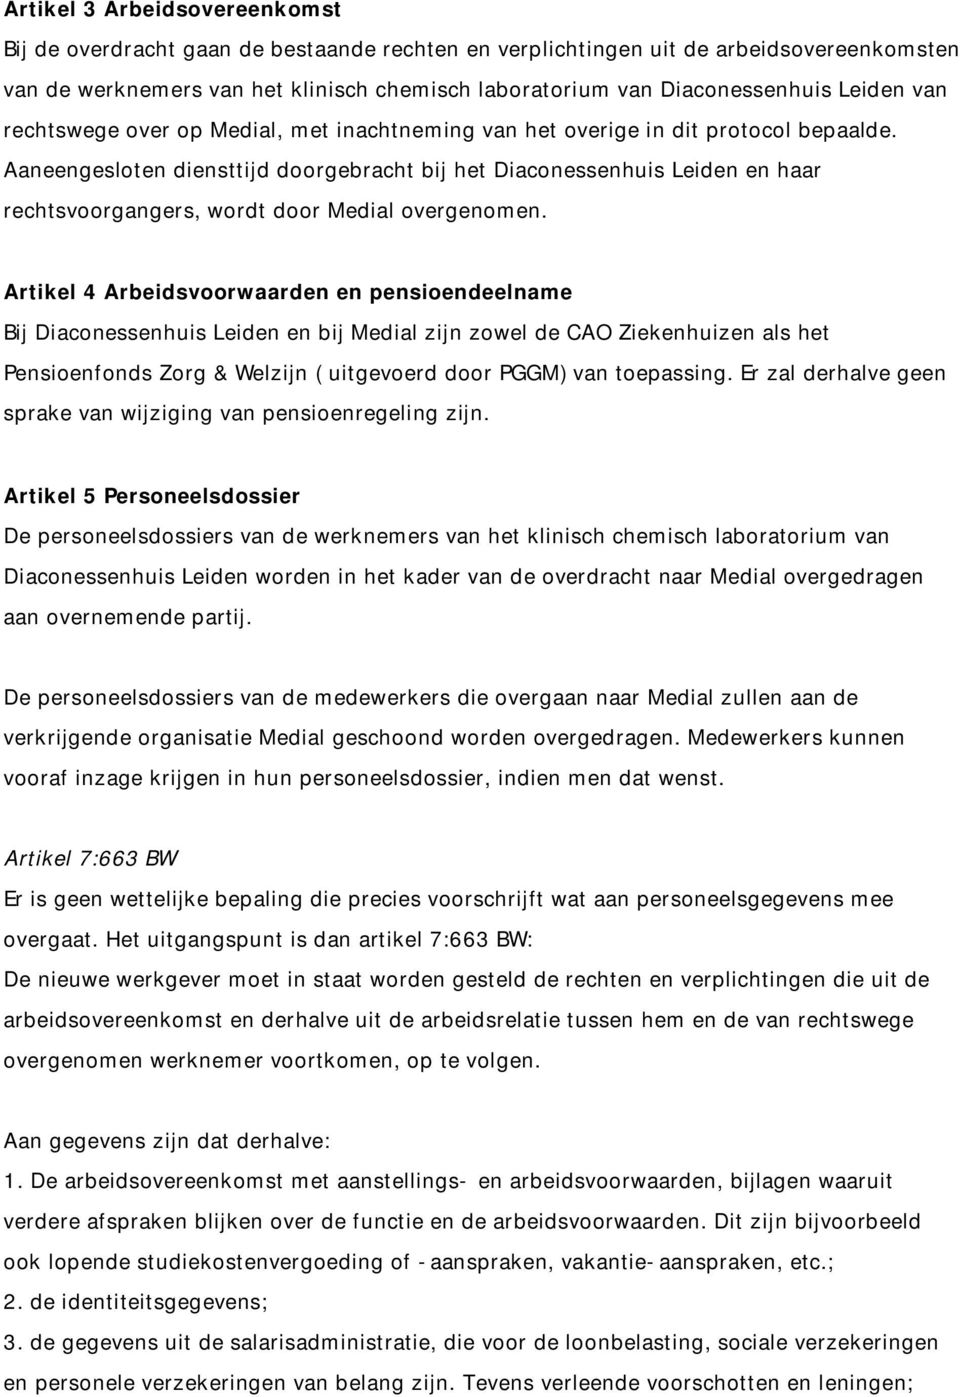 Aaneengesloten diensttijd doorgebracht bij het Diaconessenhuis Leiden en haar rechtsvoorgangers, wordt door Medial overgenomen.